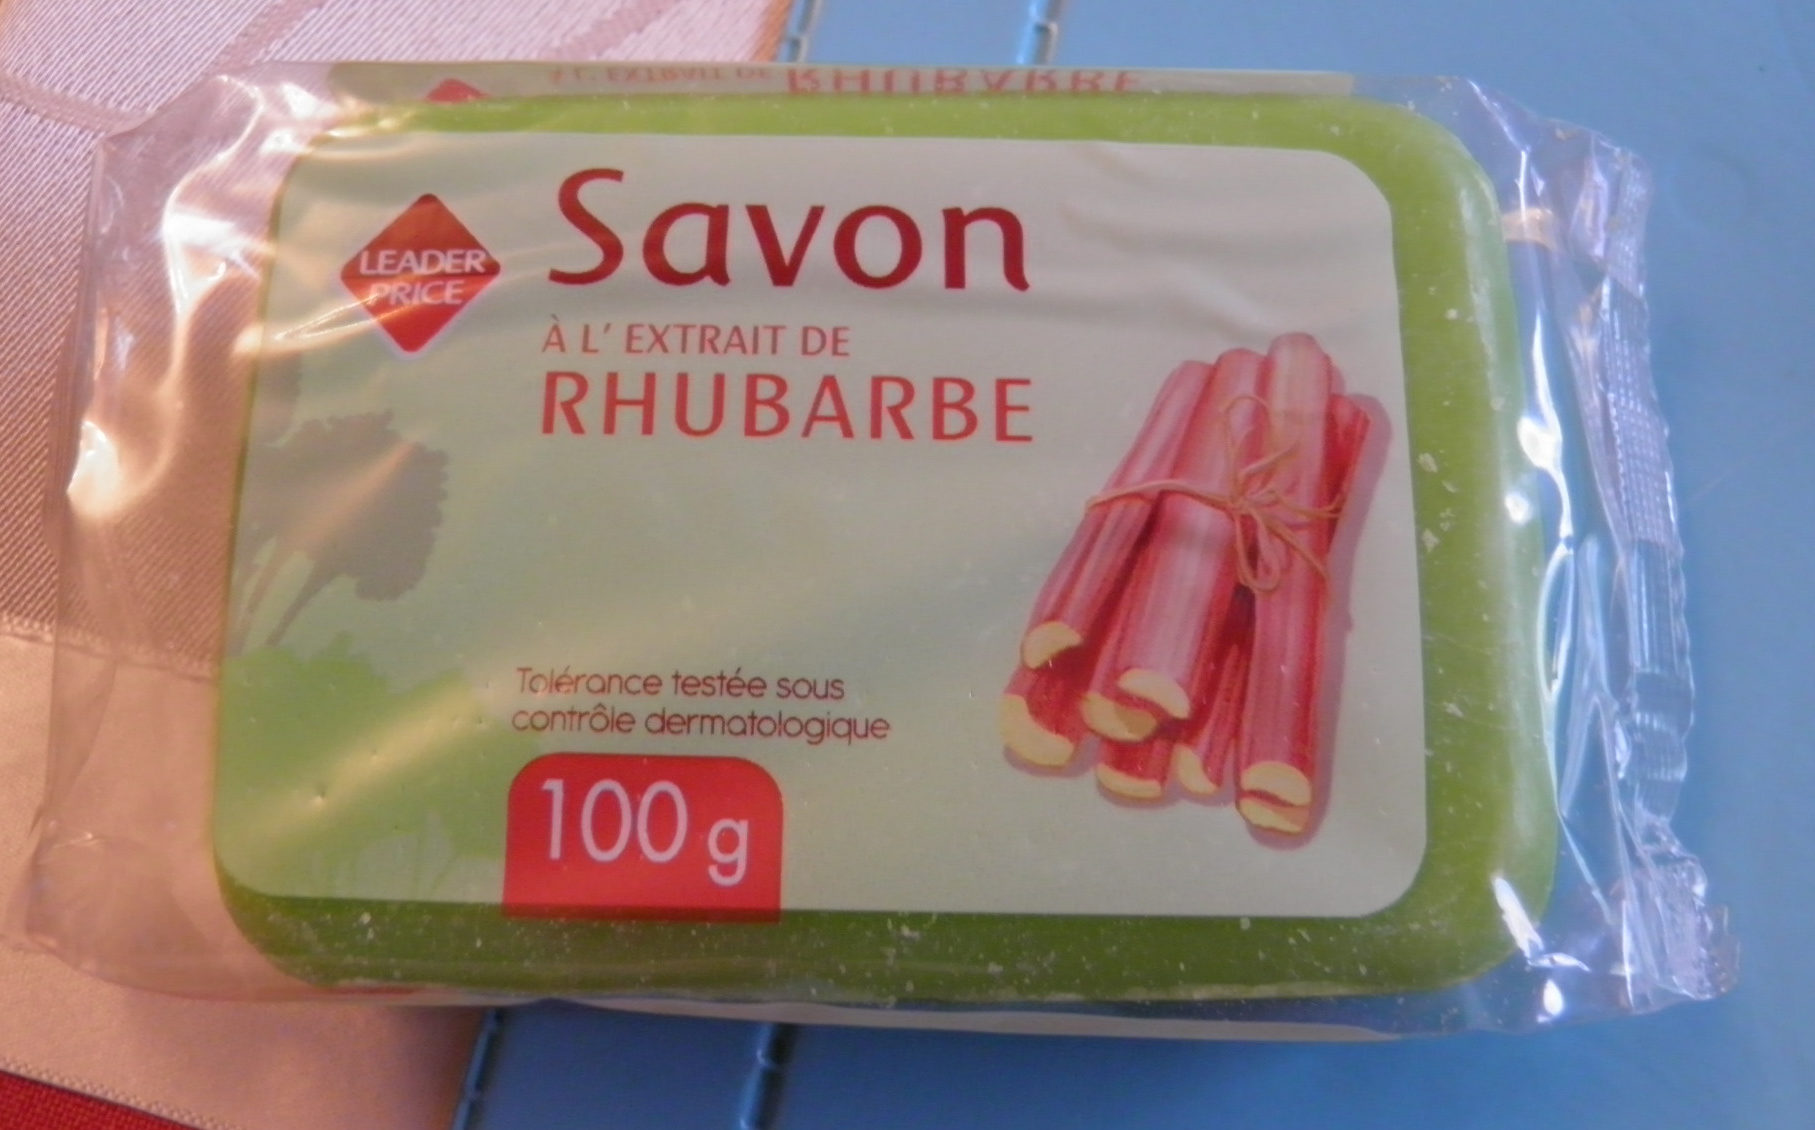 Savon à l'extrait de rhubarbe Leader Price - Product - fr